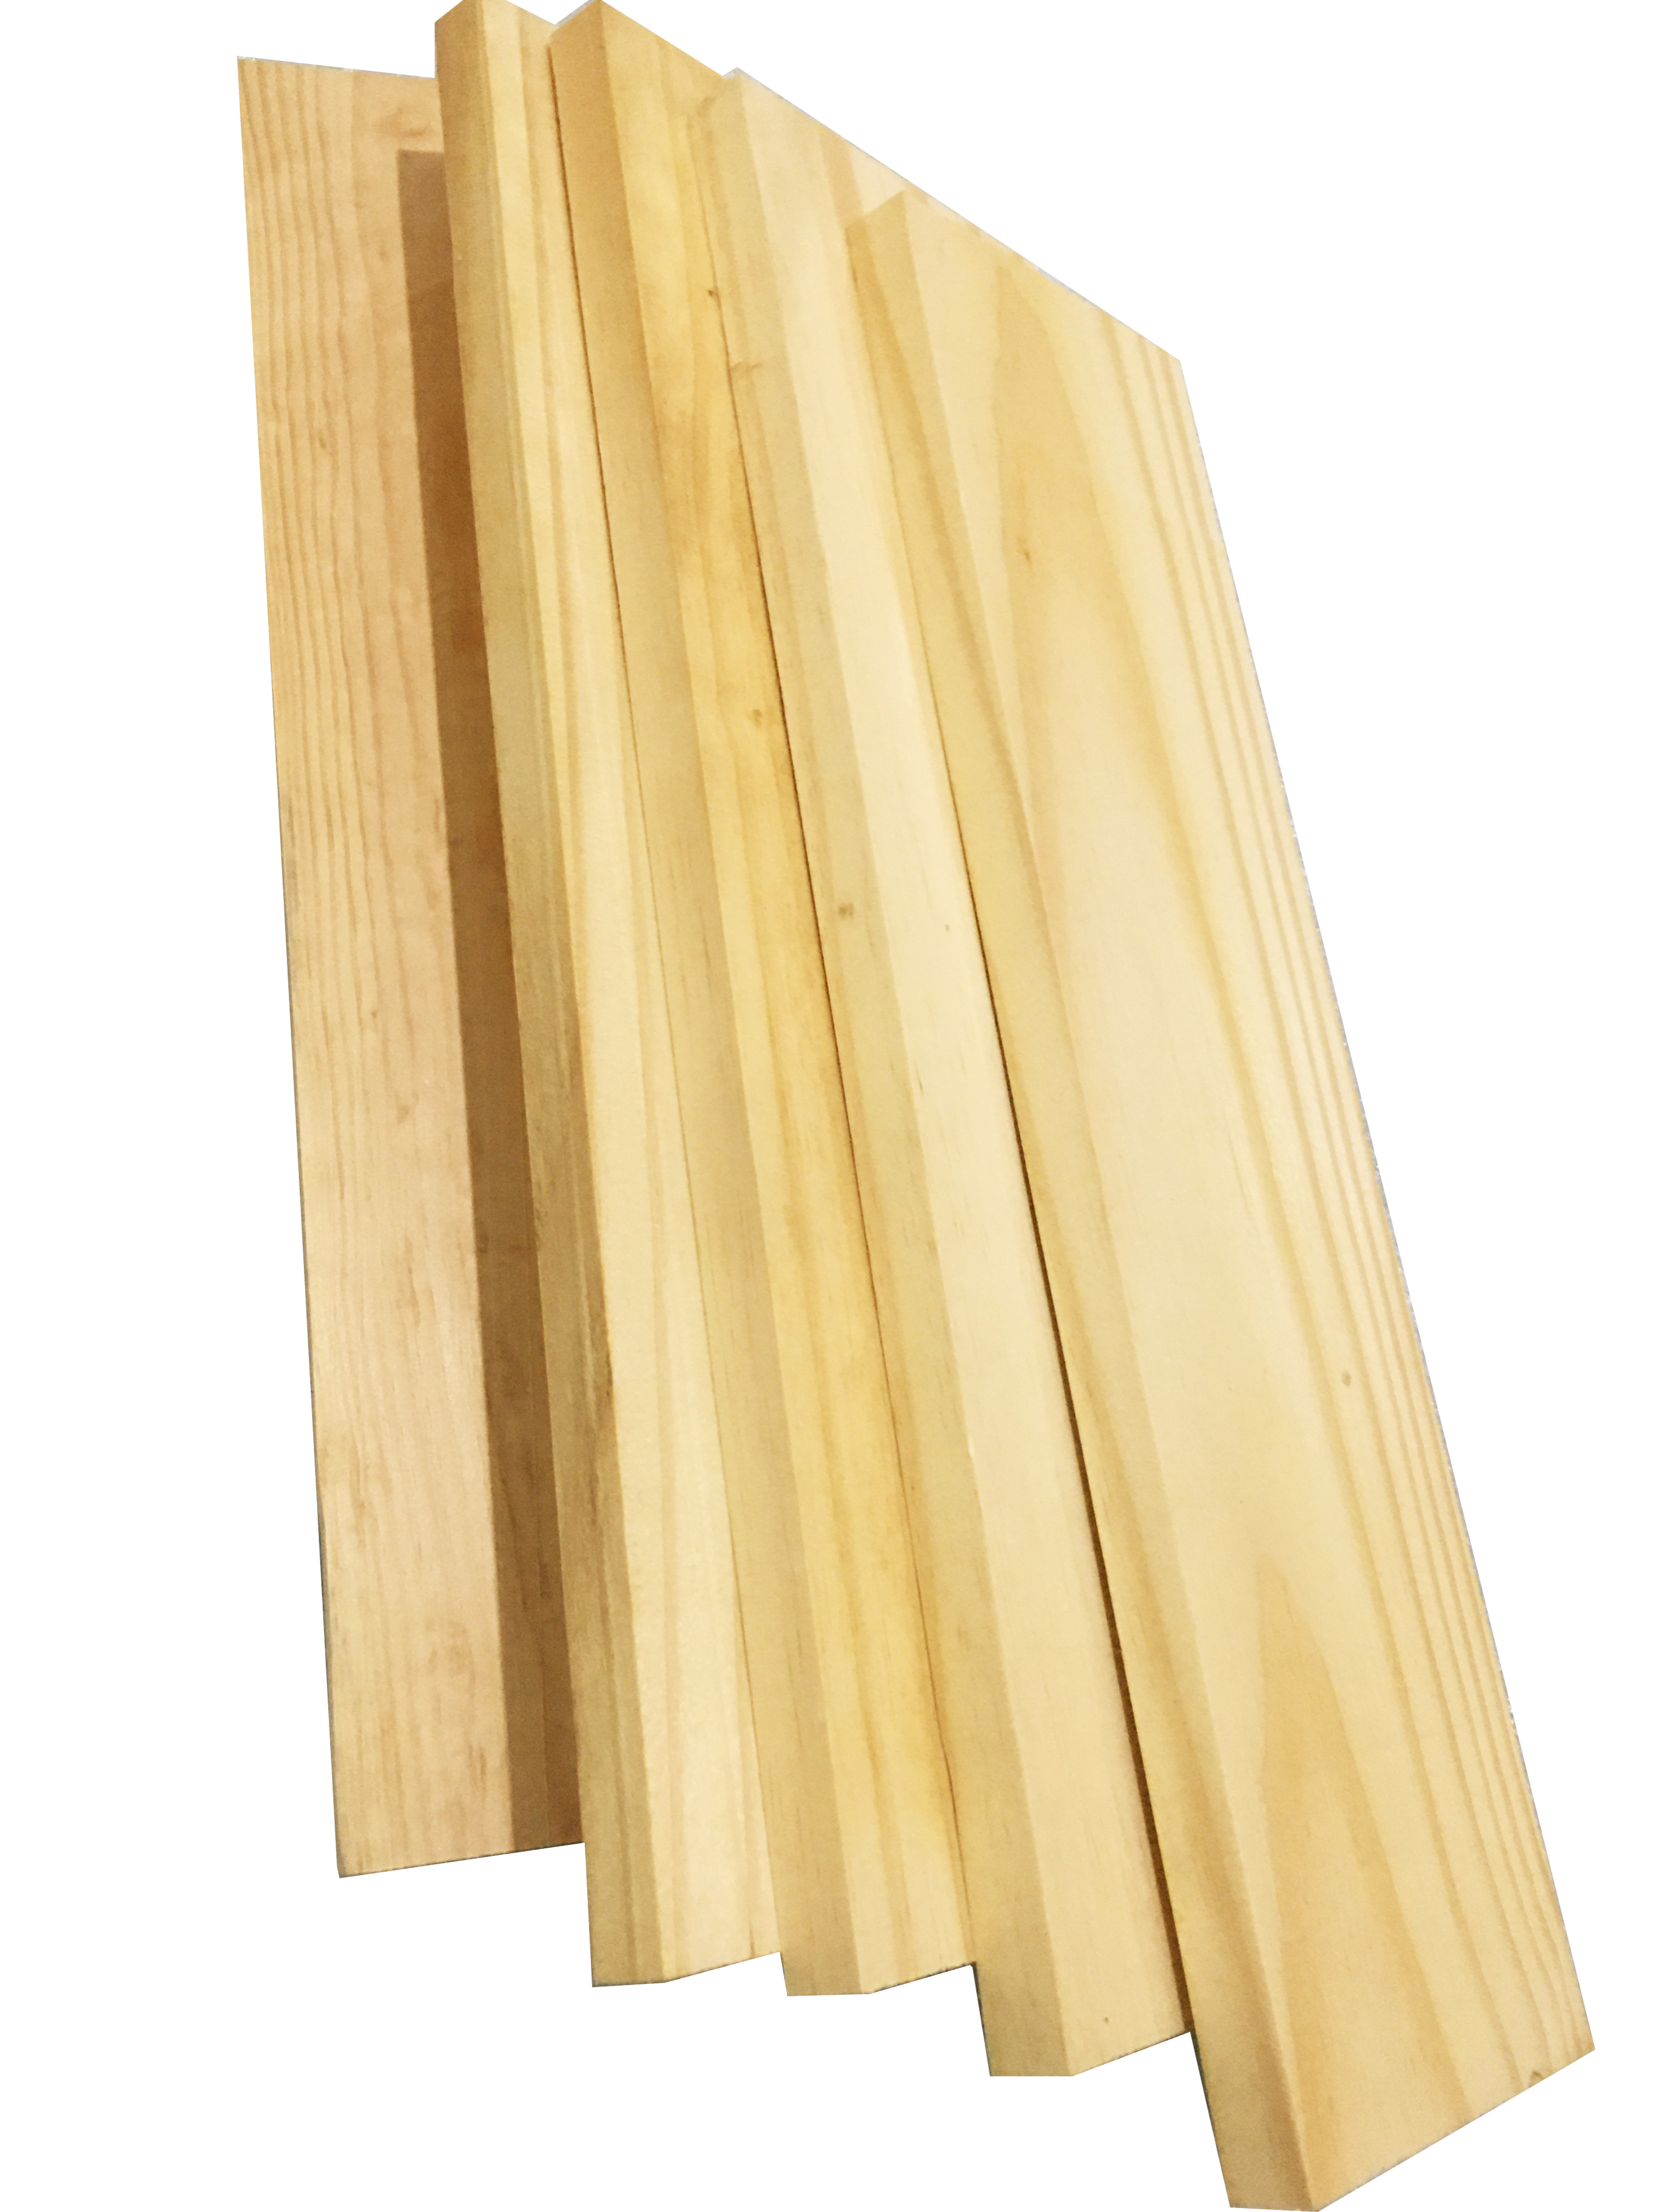 Bó 5 thanh gỗ thông đẹp dài 40cm, rộng 9cm, dày 1.2cm dùng làm kệ, ốp tường, trang trí, decorde